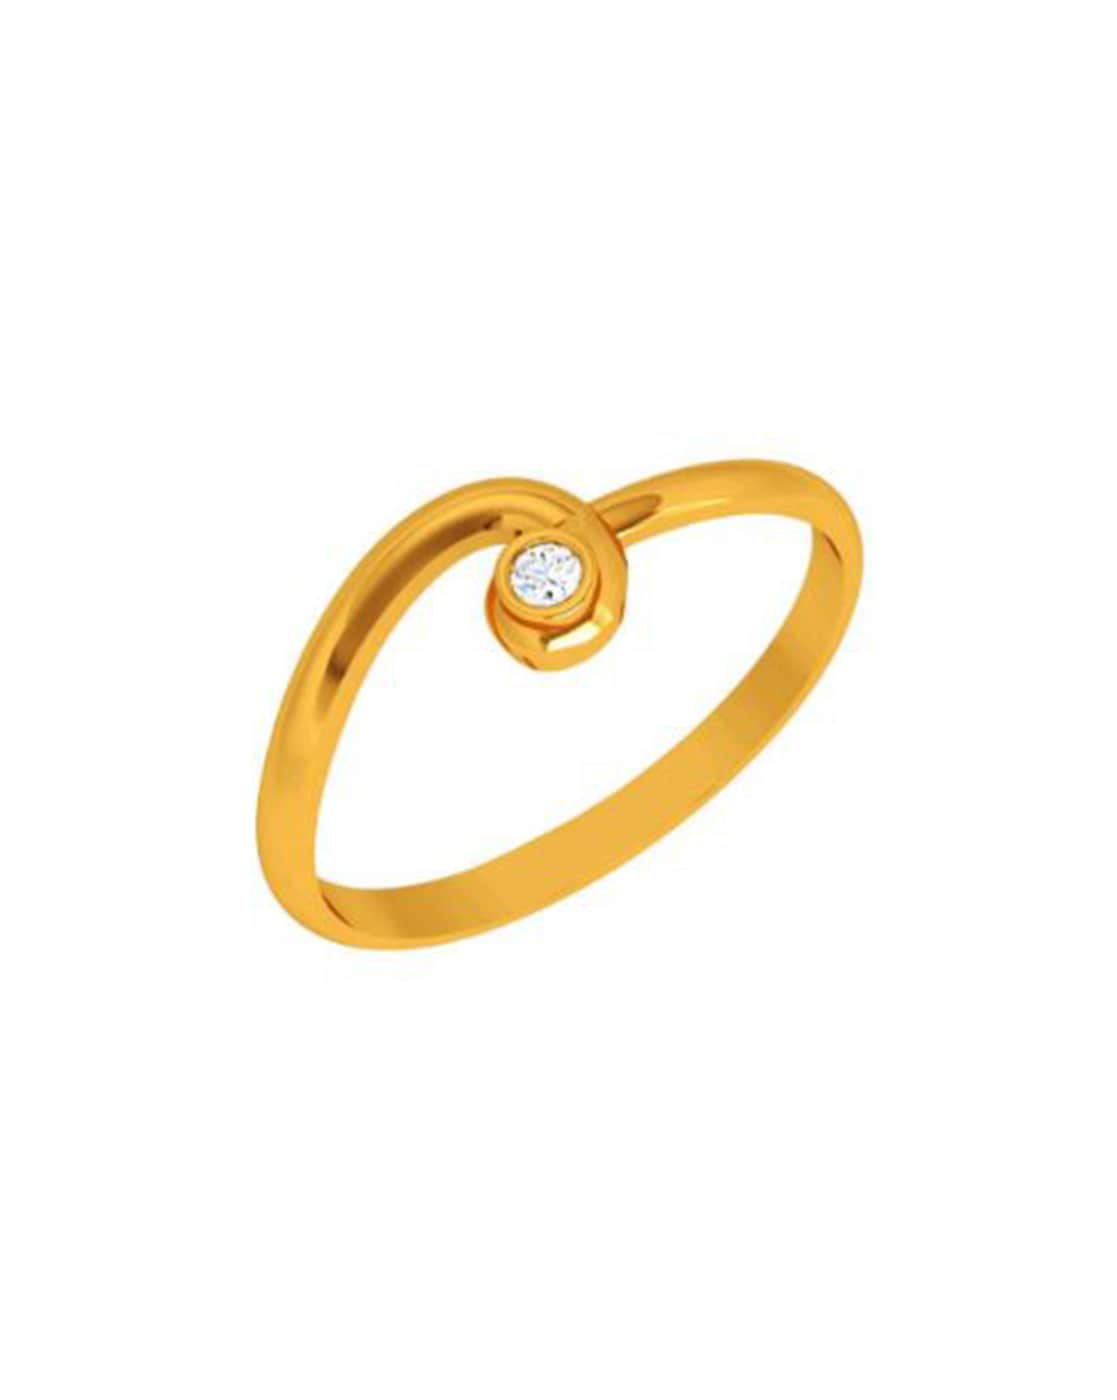 Anguthi Ki Design For Girls | Anguthi Design| Gold Rings Design 5000  #anguthi - YouTube